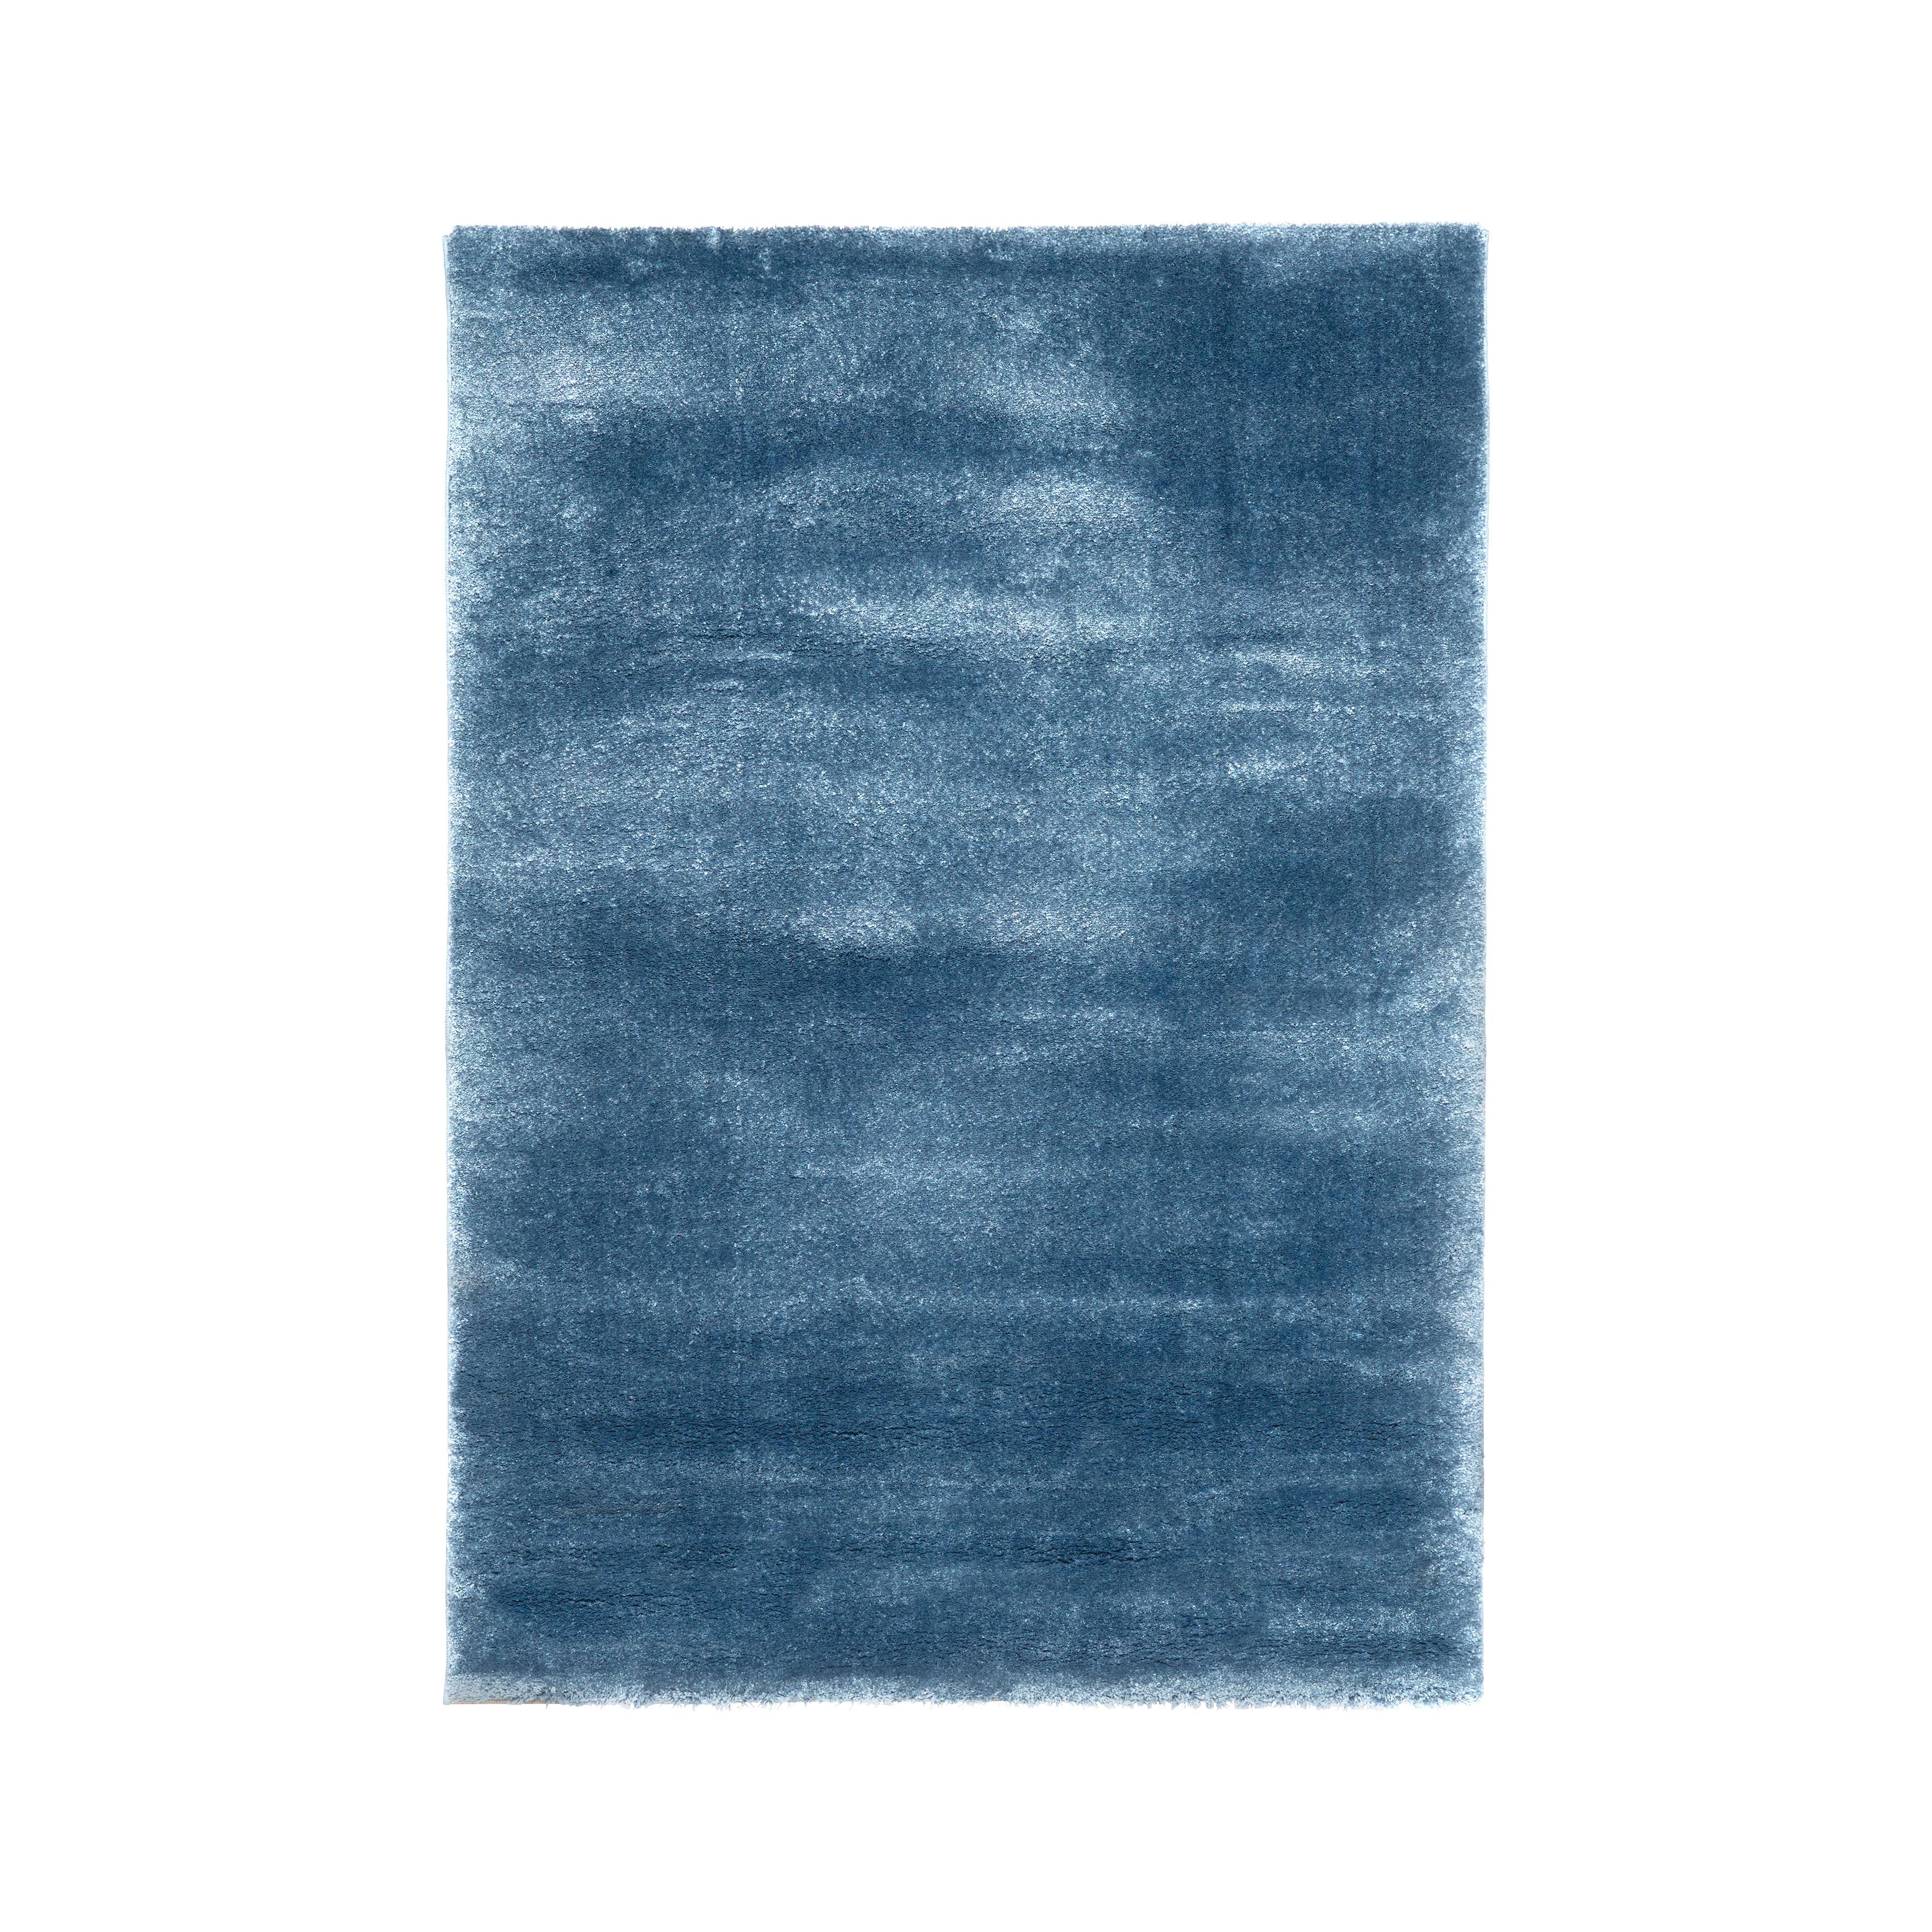 Tkaný koberec RUBIN 3 NEU, š/d: 160/230cm - tmavě modrá, Moderní, textil (160/230cm) - Modern Living